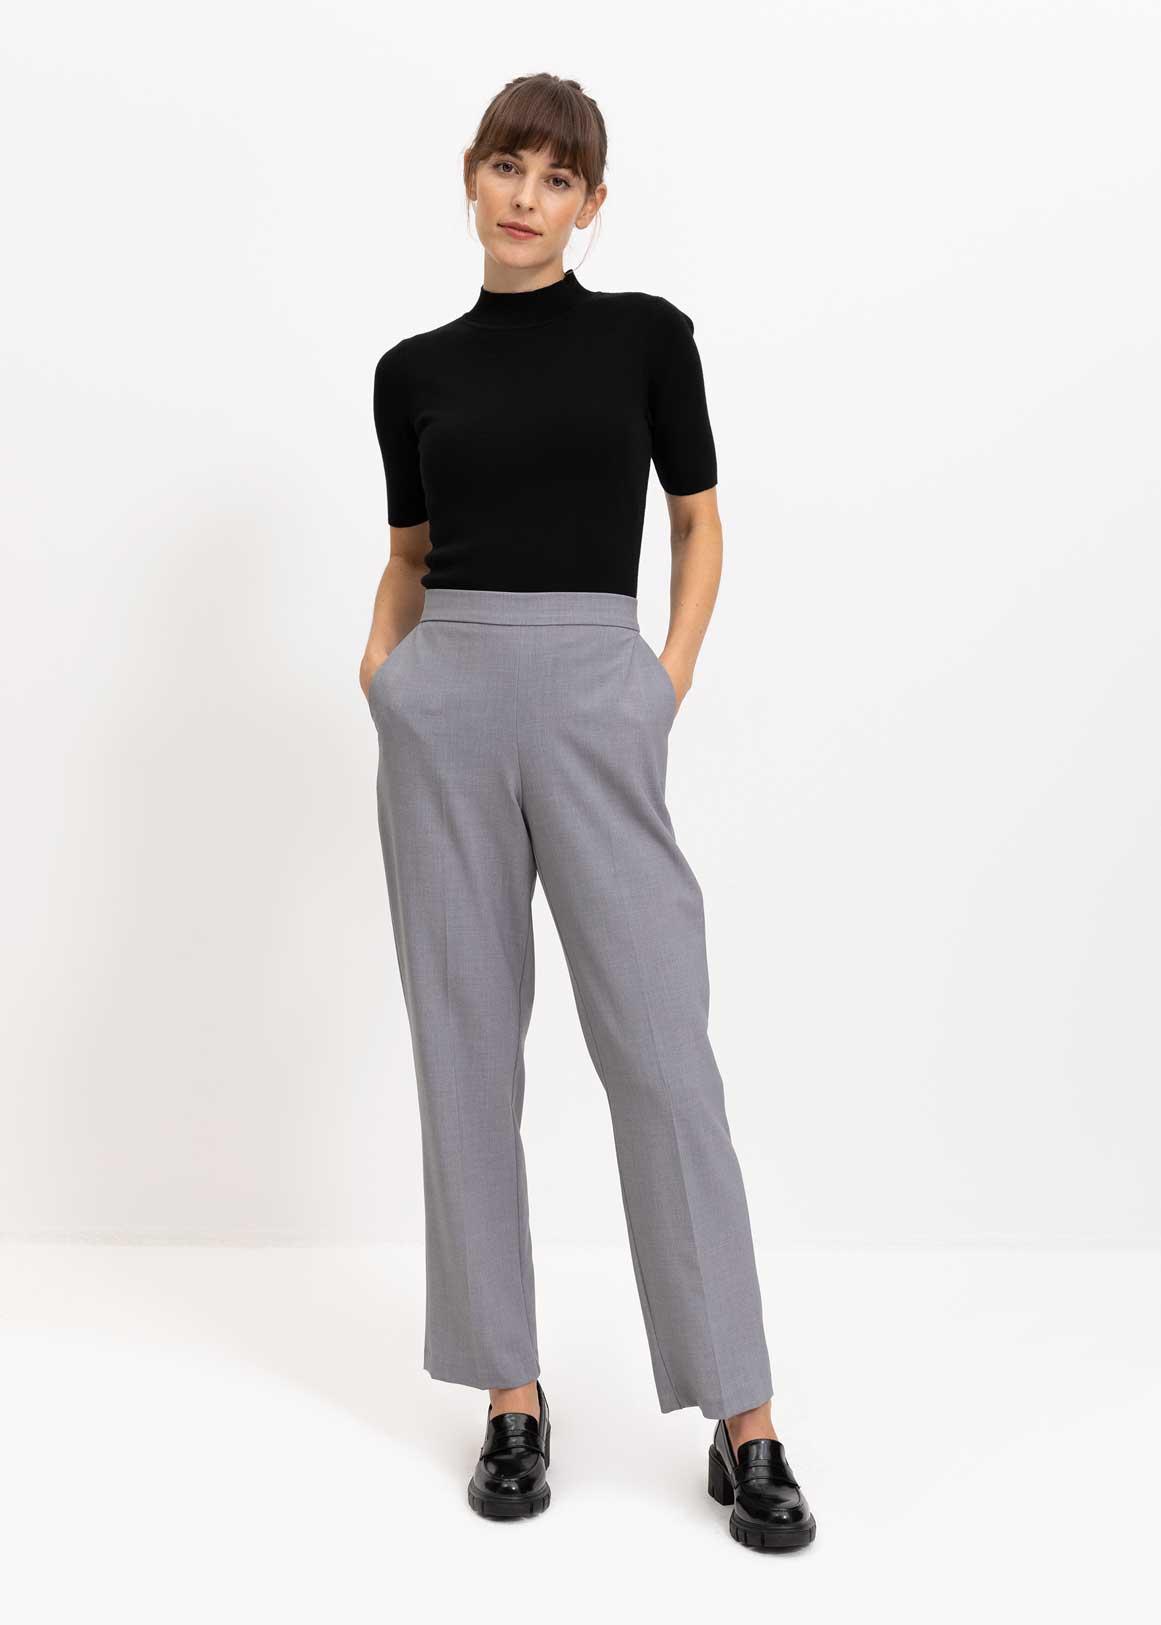 Women's Petite Trousers Occasionwear Plain Wide